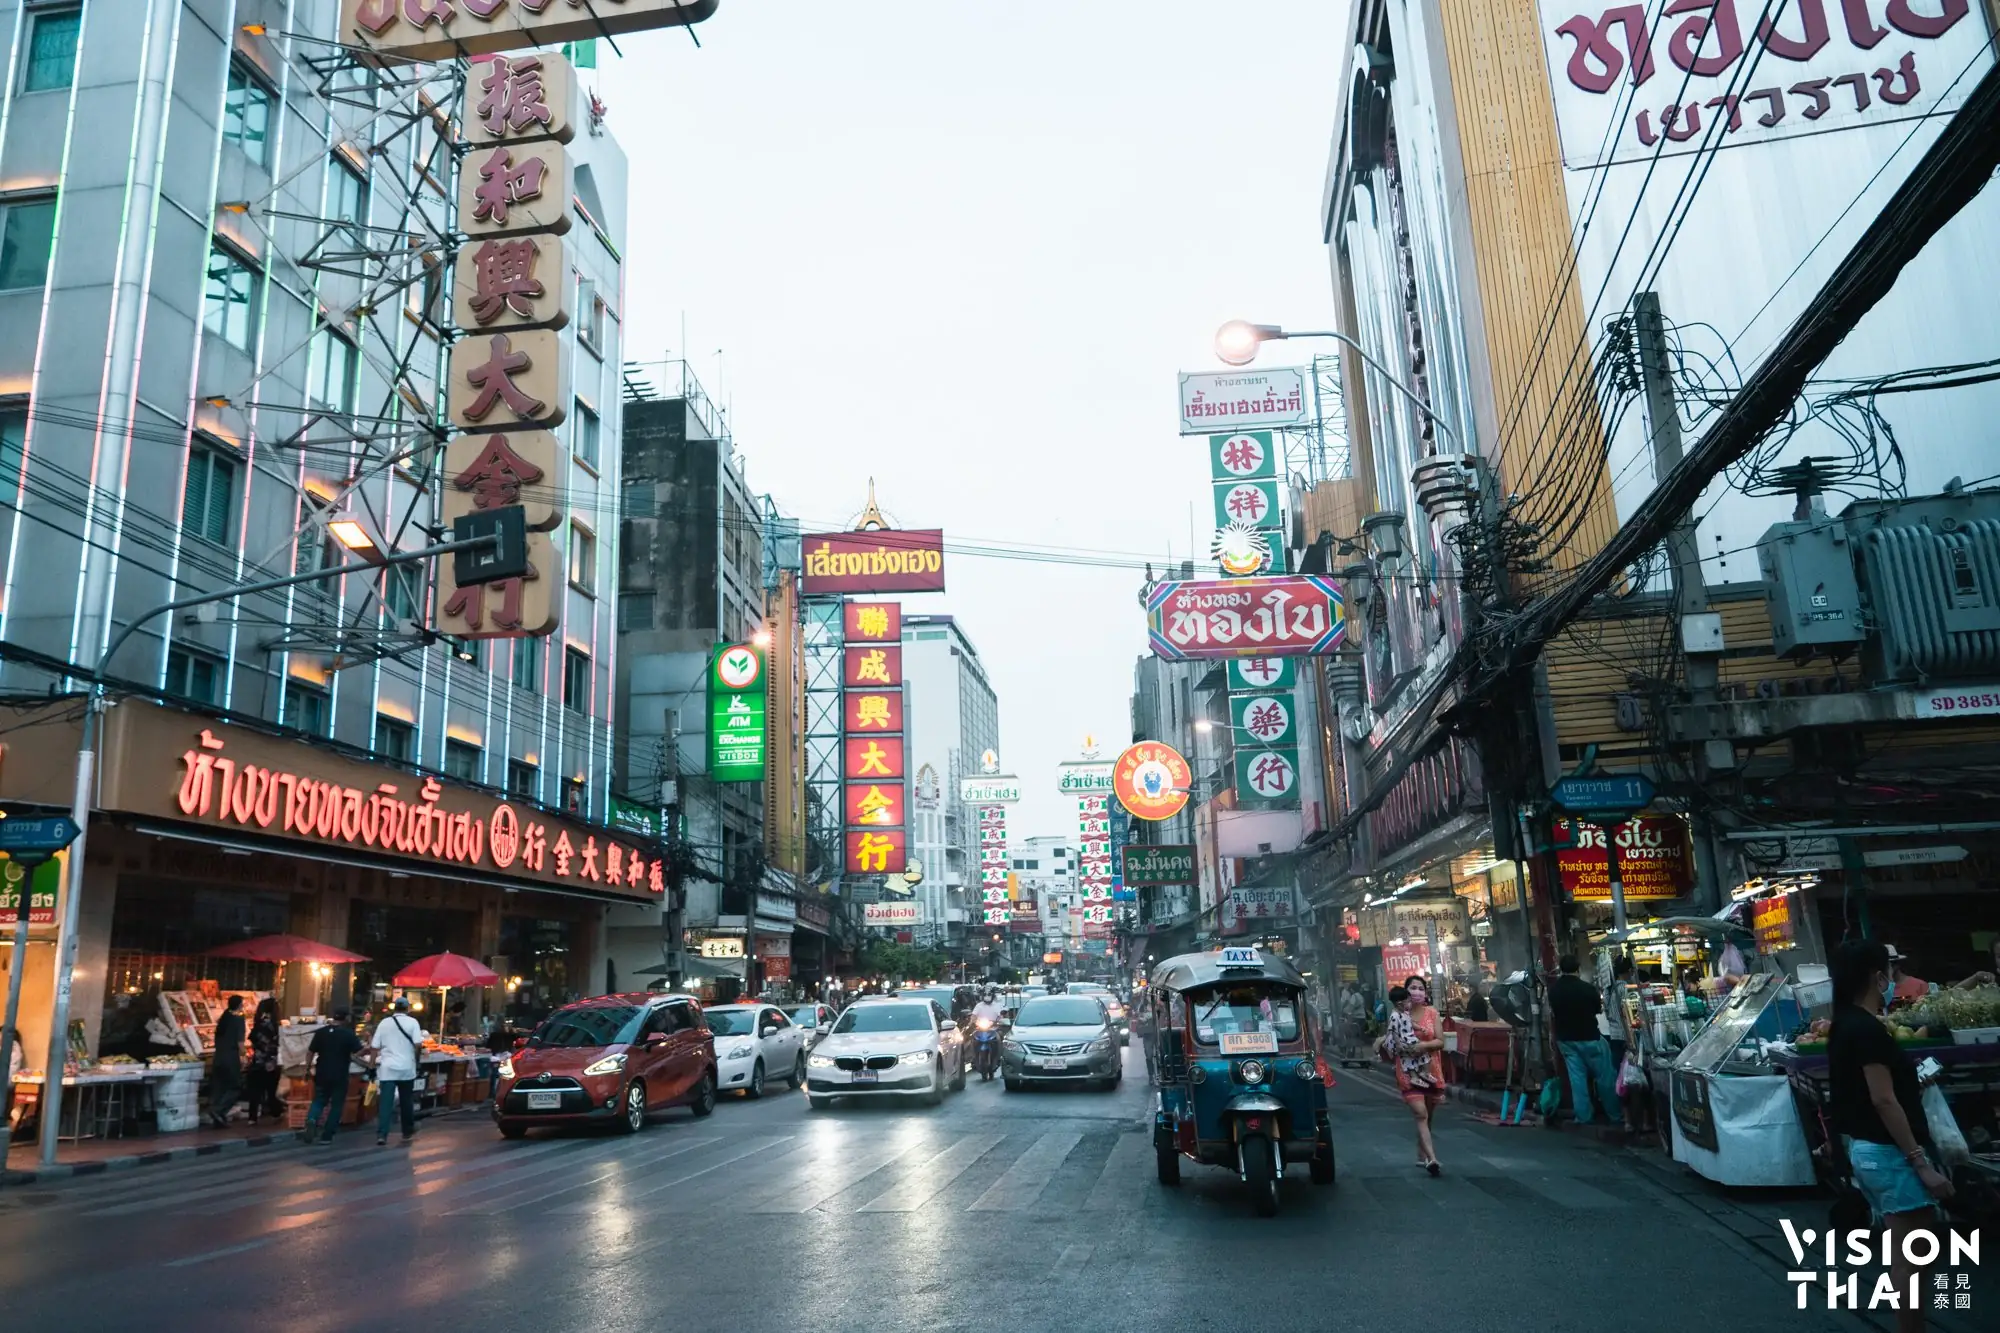 曼谷中国城是当地美食重镇(VISION THAI)